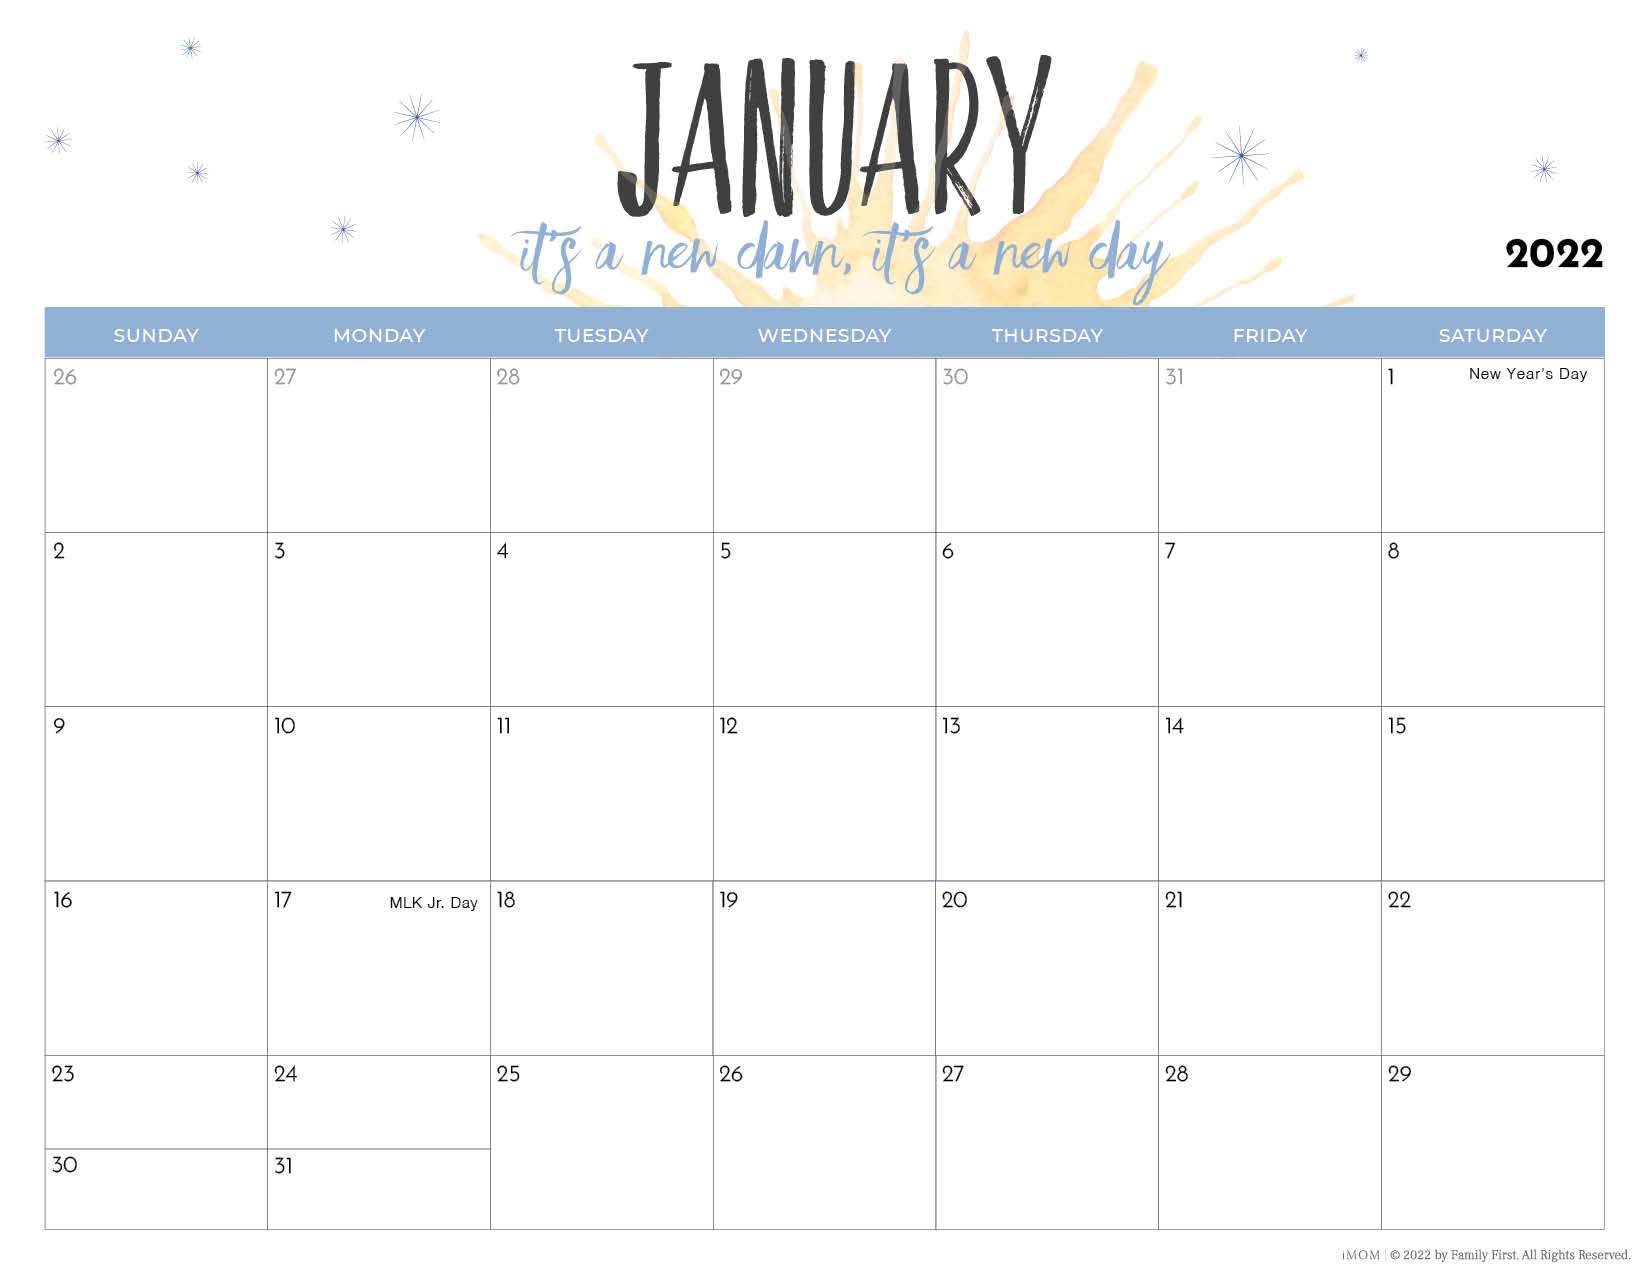 Print A Calendar 2022 2022 Printable Calendars For Moms - Imom